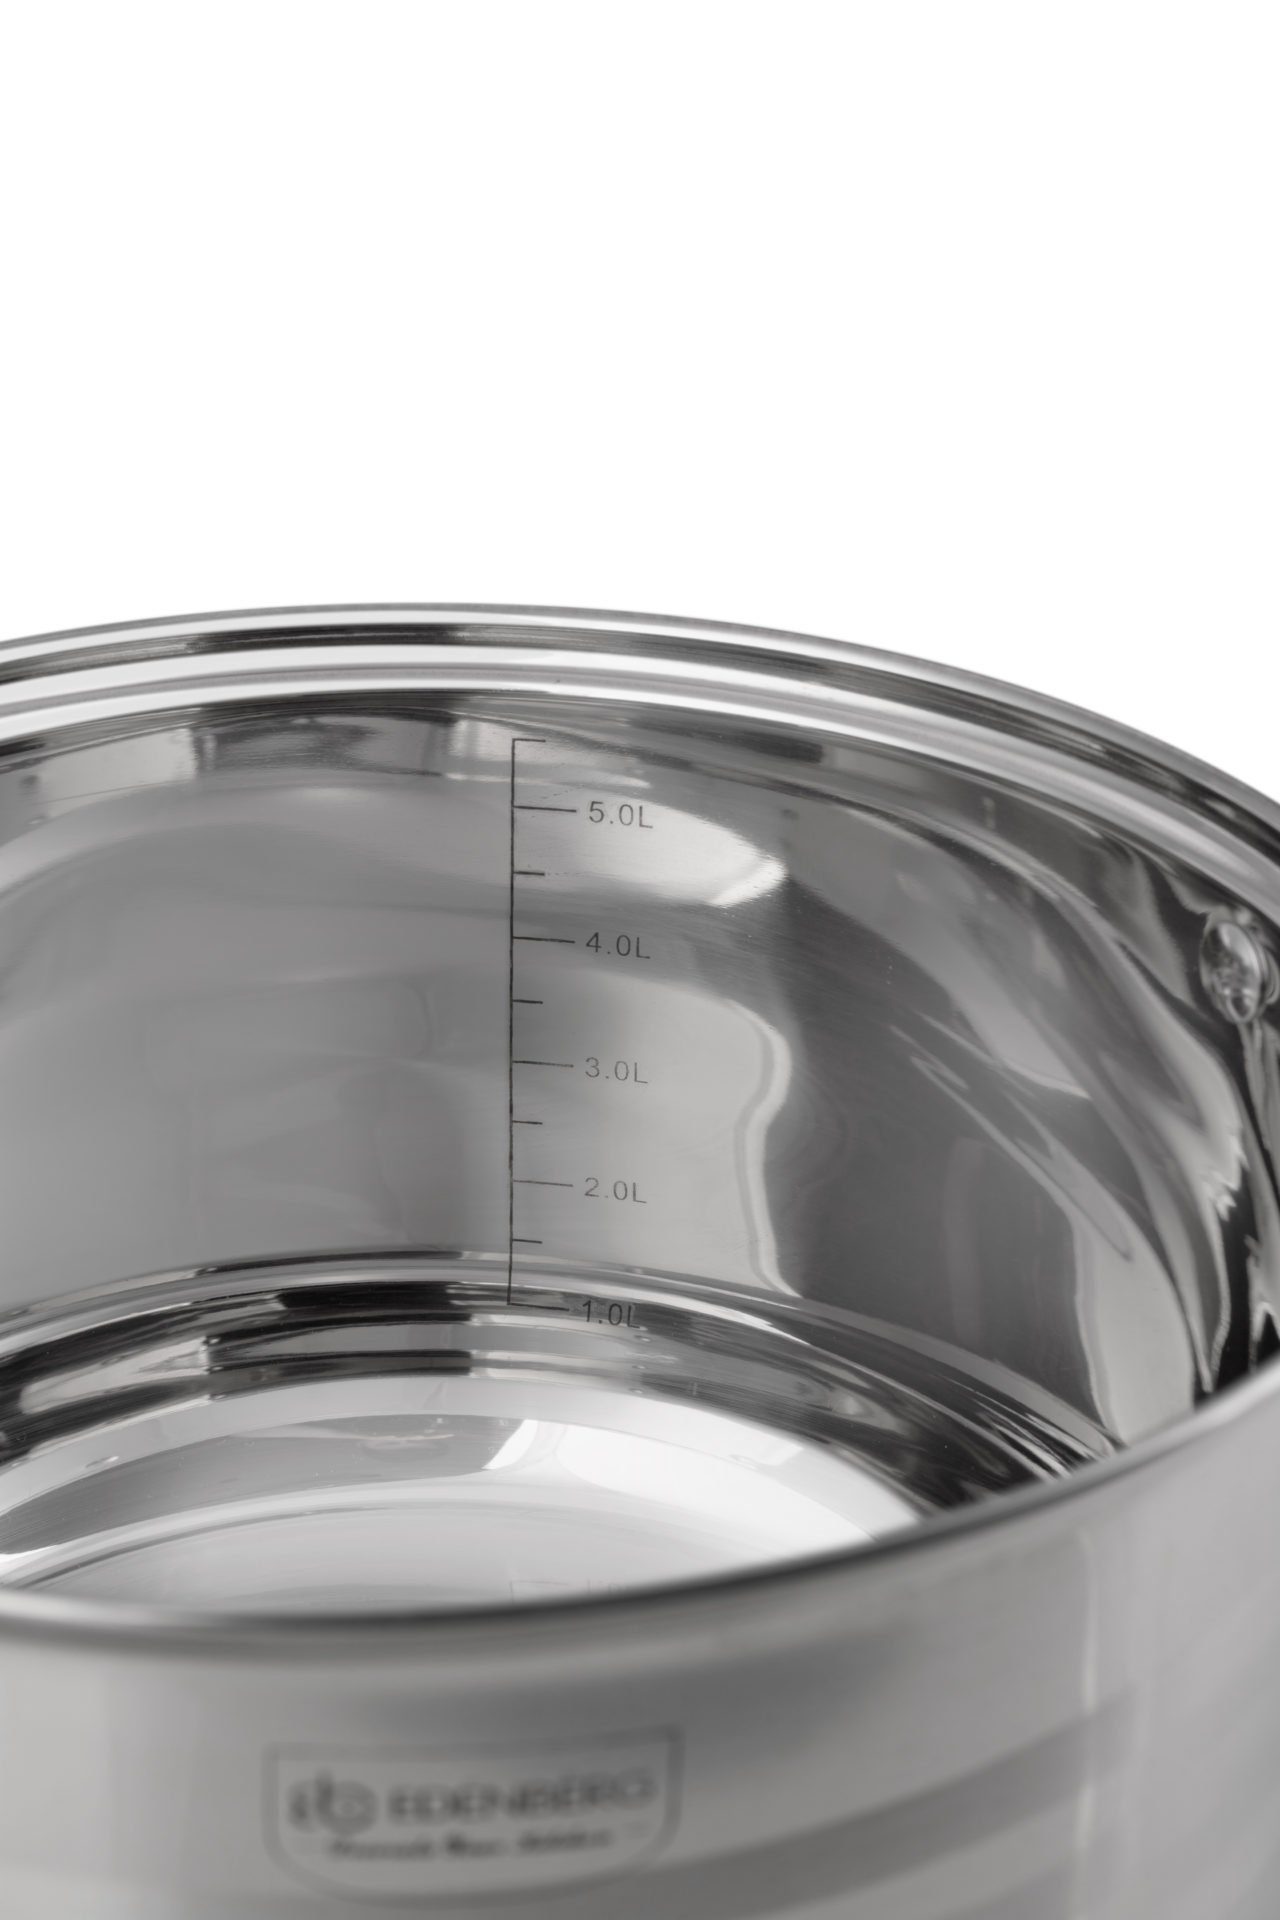 Edenberg Topf-Set Kochtöpfe mit Glasdeckel, ideale Töpfe Topfsets. Eine Aluminium, Edelstahl, Glas (Zeitloses Geschenkidee) des Topfset, Edelstahl, Kochtopfset, Design